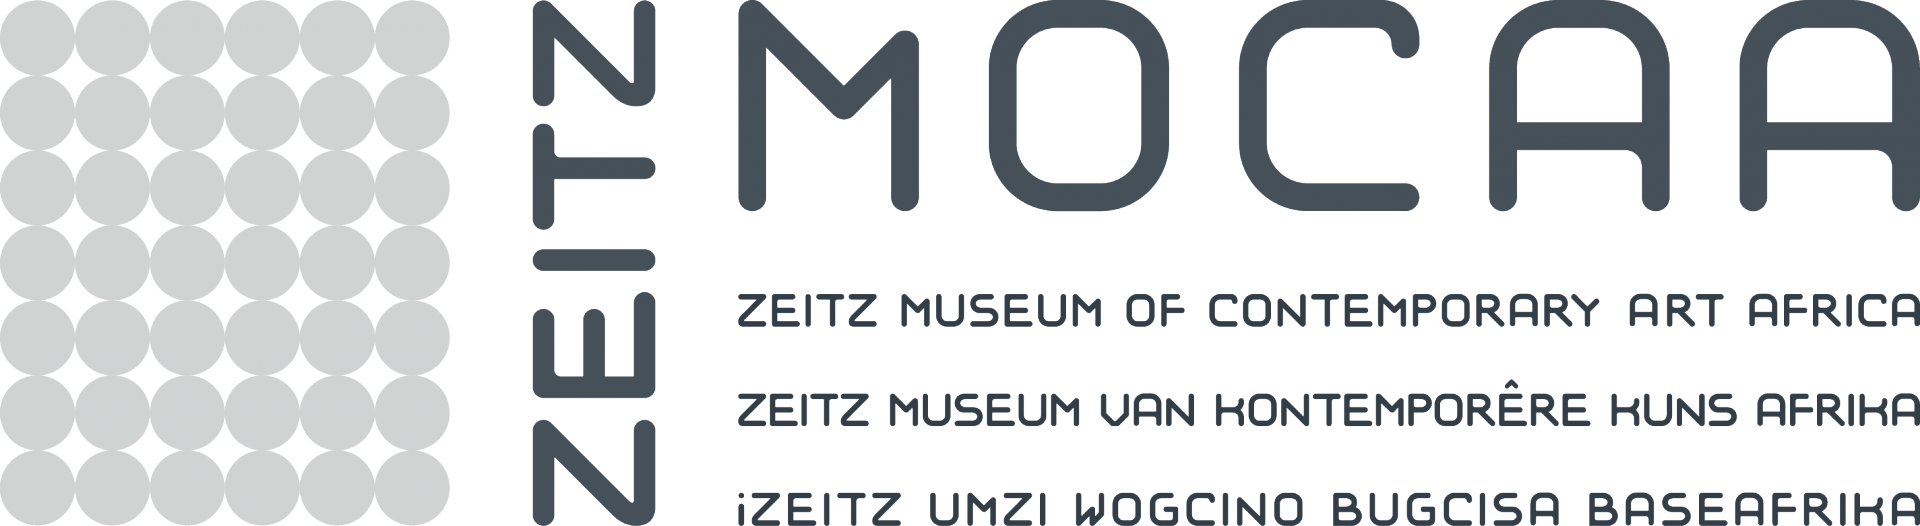 Zeitz Museum of Contemporary Art Africa